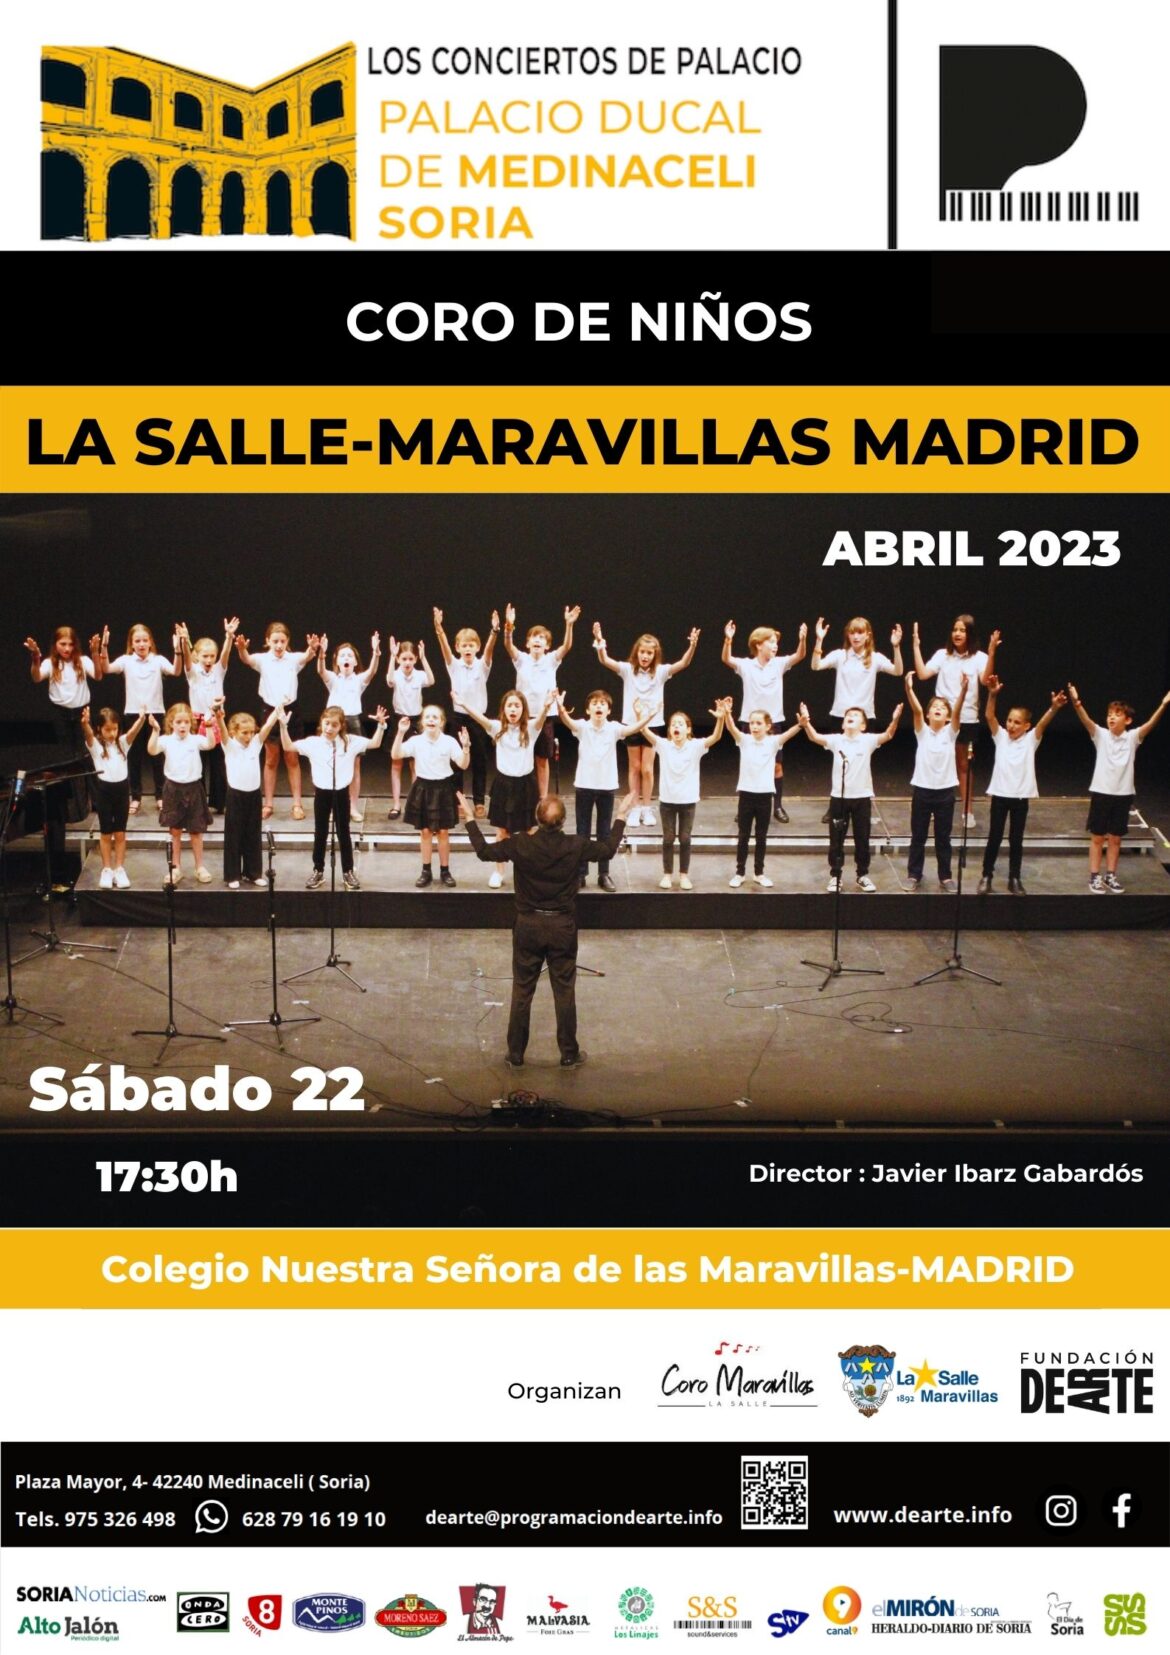 Coro de niños La Salle-Maravillas de Madrid